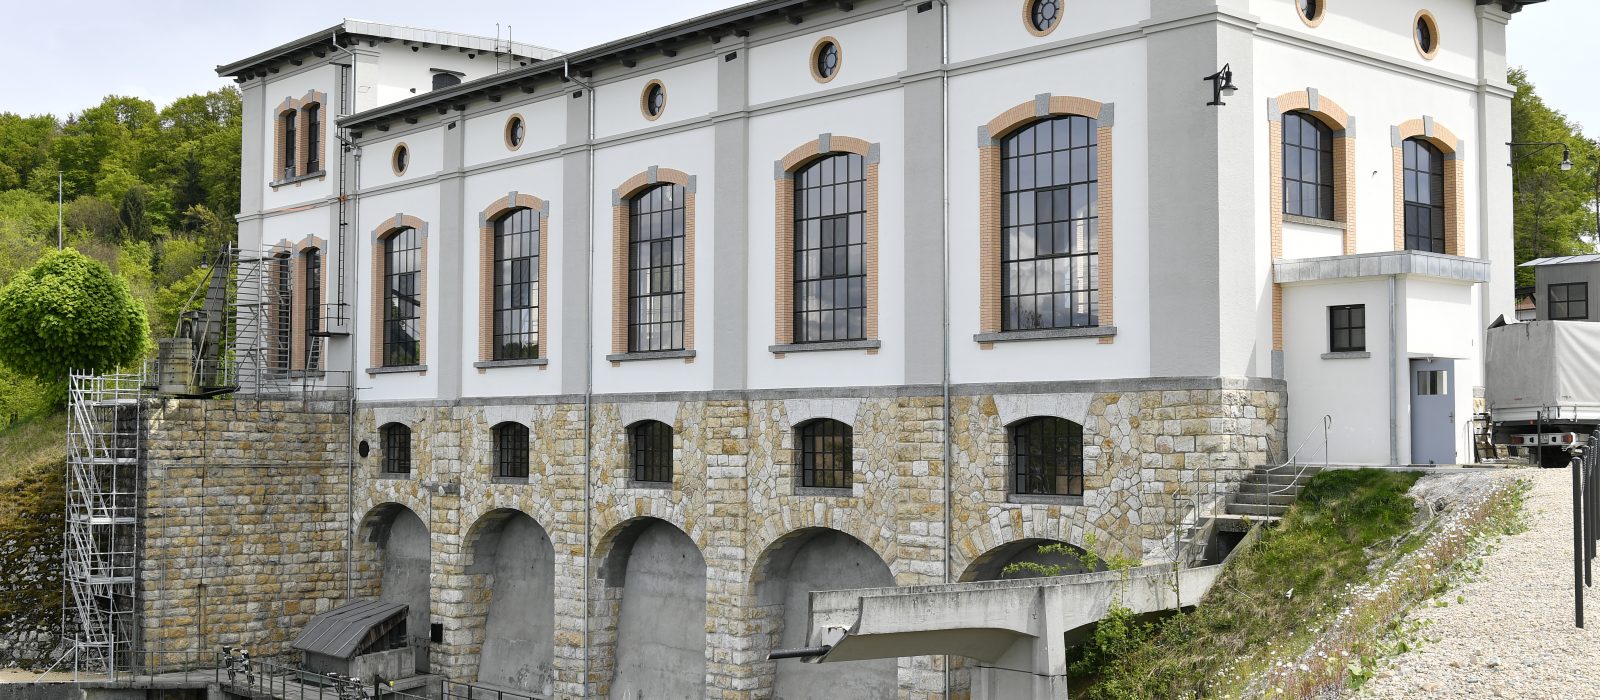 Wasserkraftwerk Hagneck altes Turbinenhaus Maschinenhaus wird saniert, Enrico Sansoni Bettlach